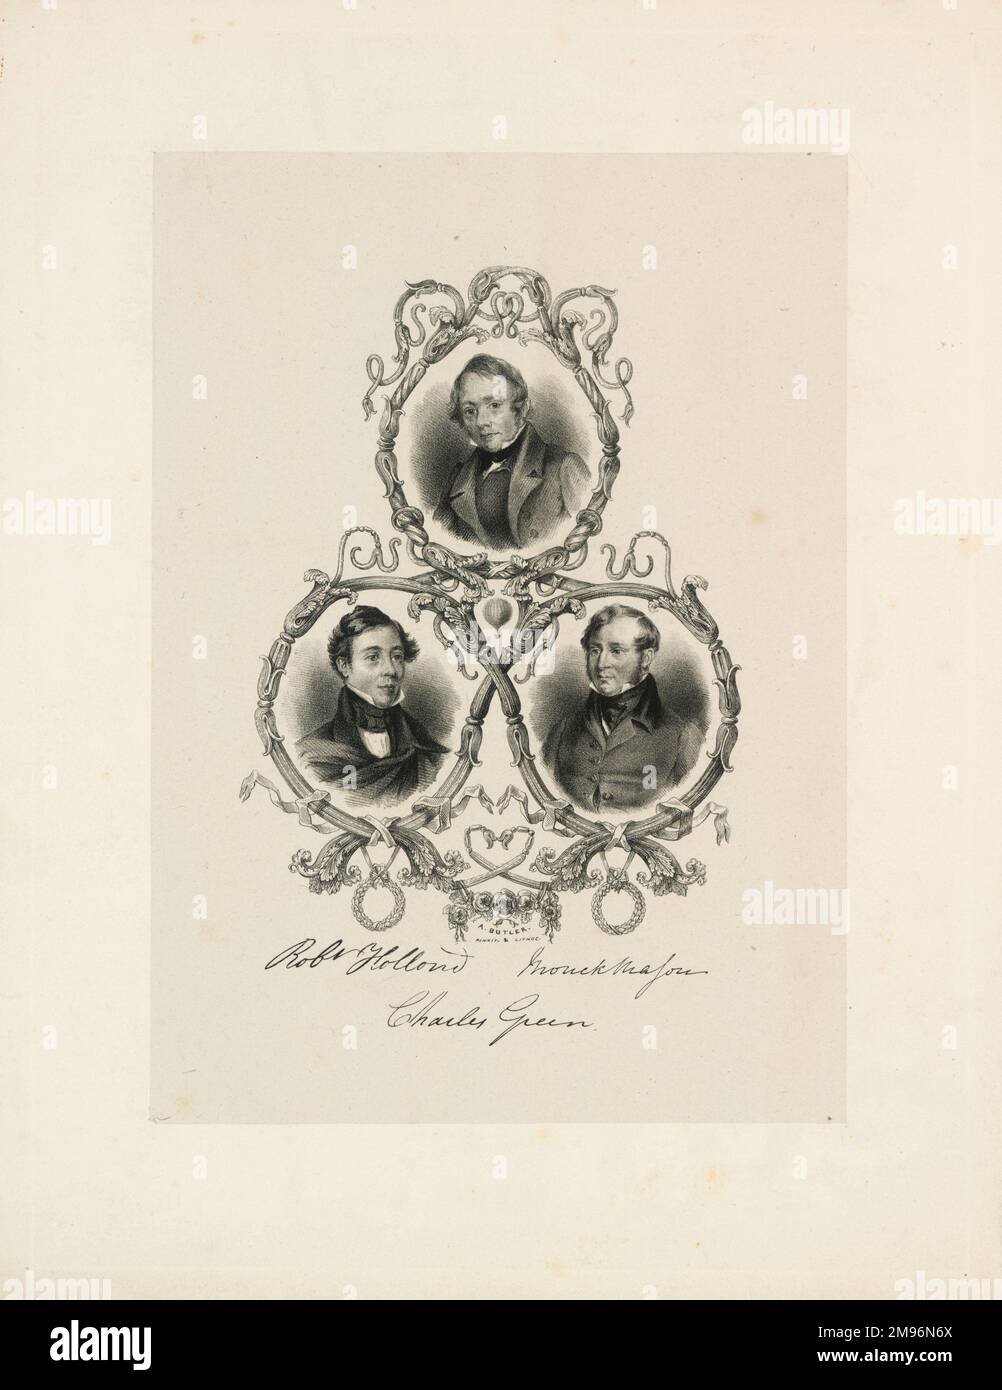 Drei Miniaturporträts von Ballonfiguren, angeordnet in einem Dreieck, mit einem kleinen Ballon in der Mitte und Unterschriften darunter. Oben steht Charles Green (1785-1870), unten links Robert Hollond (1808-1877) und unten rechts Thomas Monck Mason (1803-1889). Stockfoto